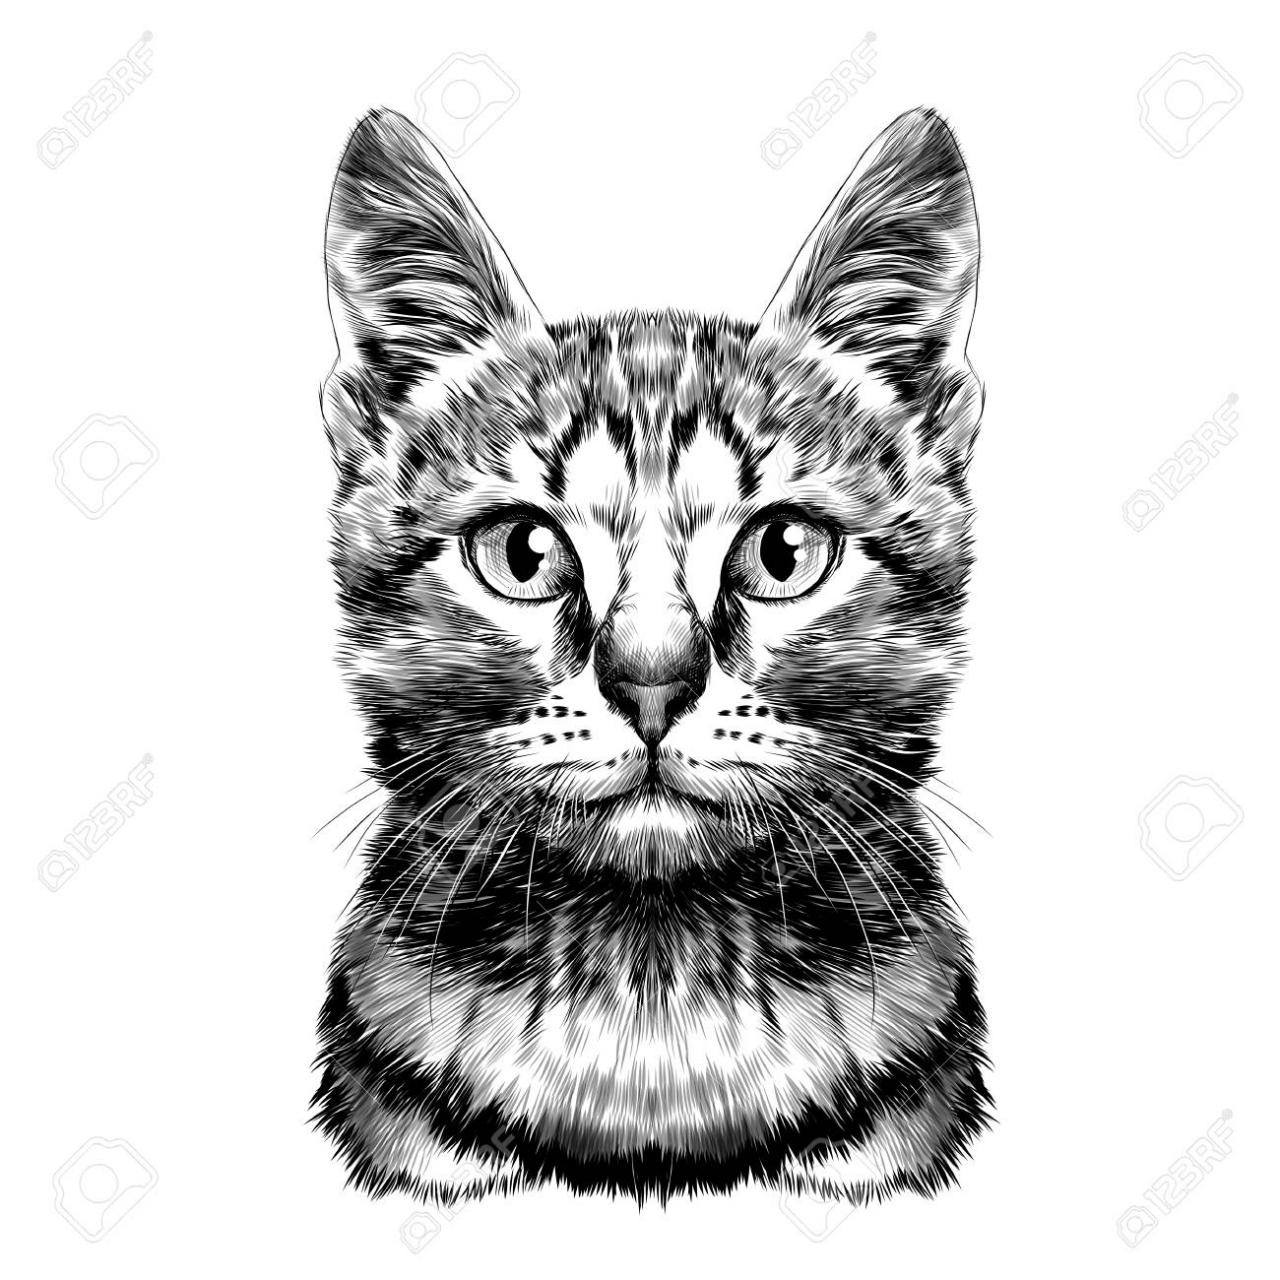 Gato manchado rayado cabeza dibujo simétrico vector gráficos blanco y negro  dibujo, dibujos de Un Gato En Blanco Y Negro, como dibujar Un Gato En Blanco Y Negro paso a paso